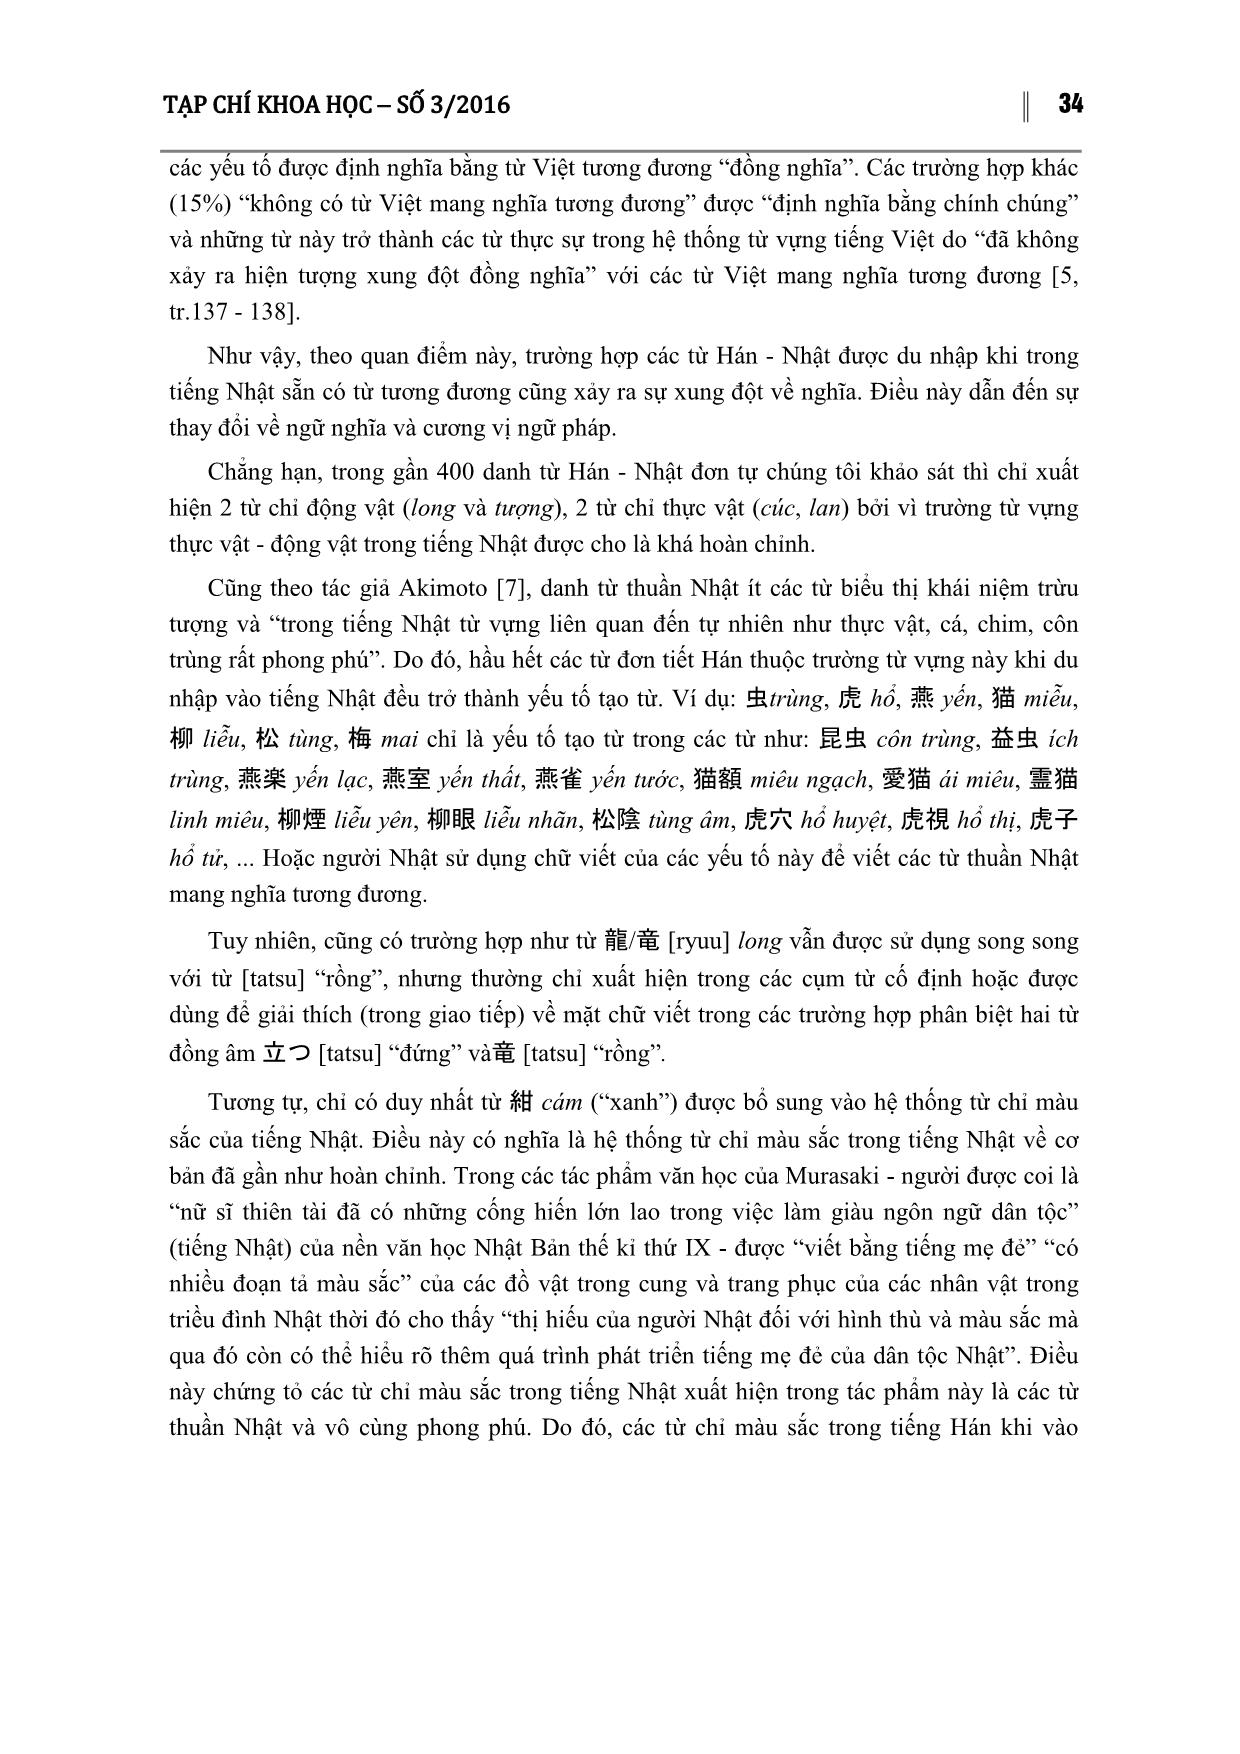 Một số đặc điểm của yếu tố hán trong tiếng Nhật - Qua cách nhìn đối chiếu với yếu tố hán trong Tiếng Việt trang 5